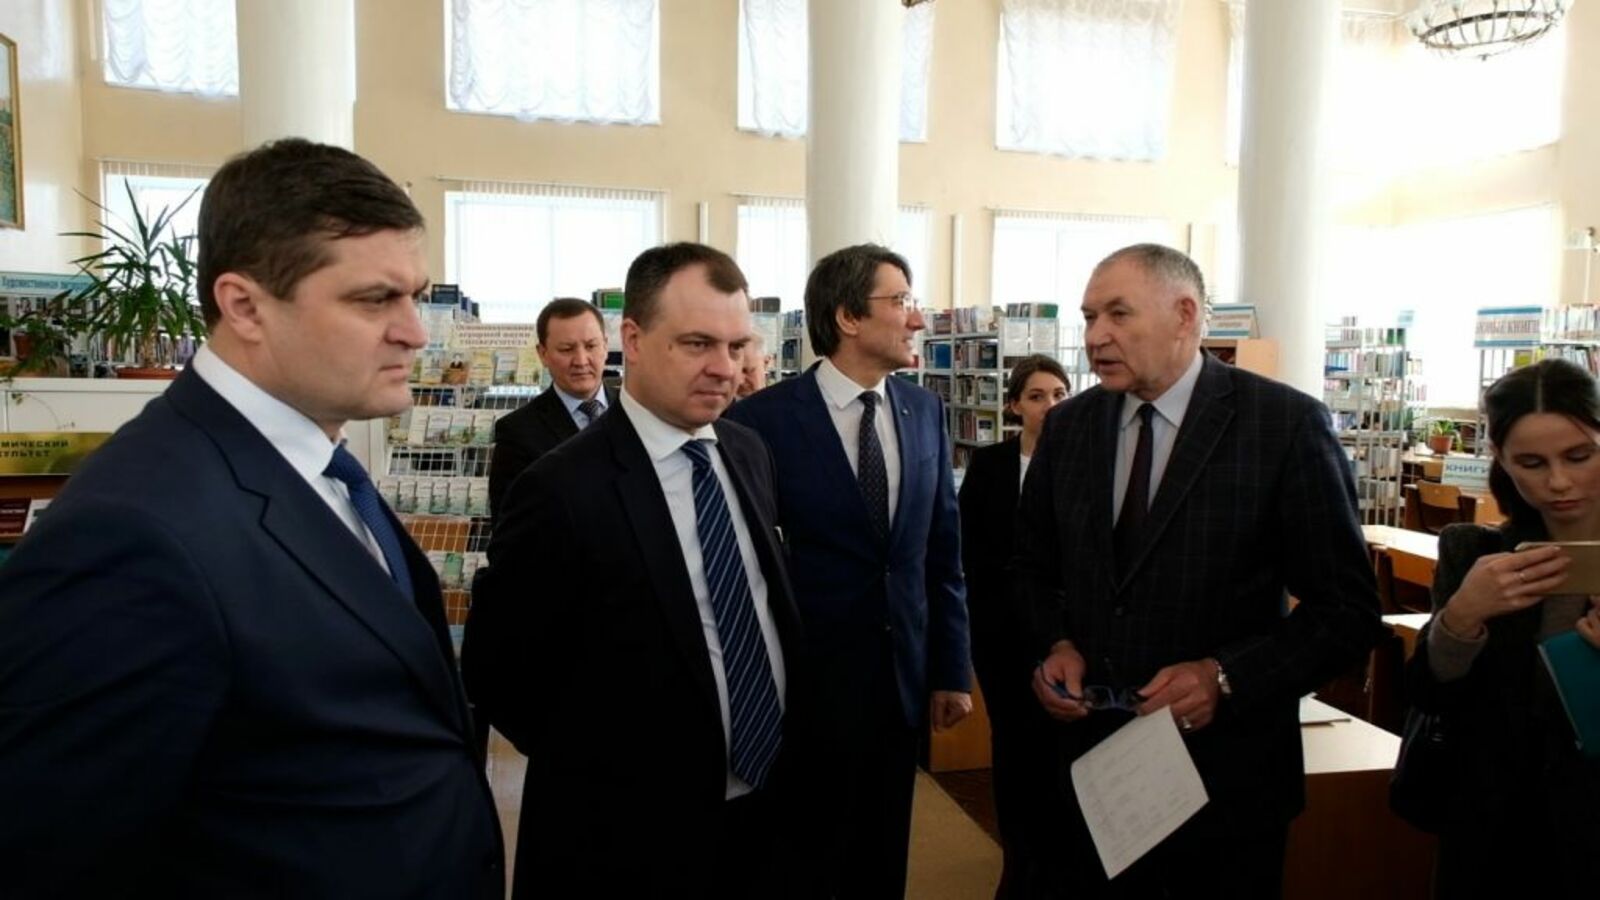 Глава Росстандарта Антон Шалаев принял участие в круглом столе по регламентации и развитию пчеловодства